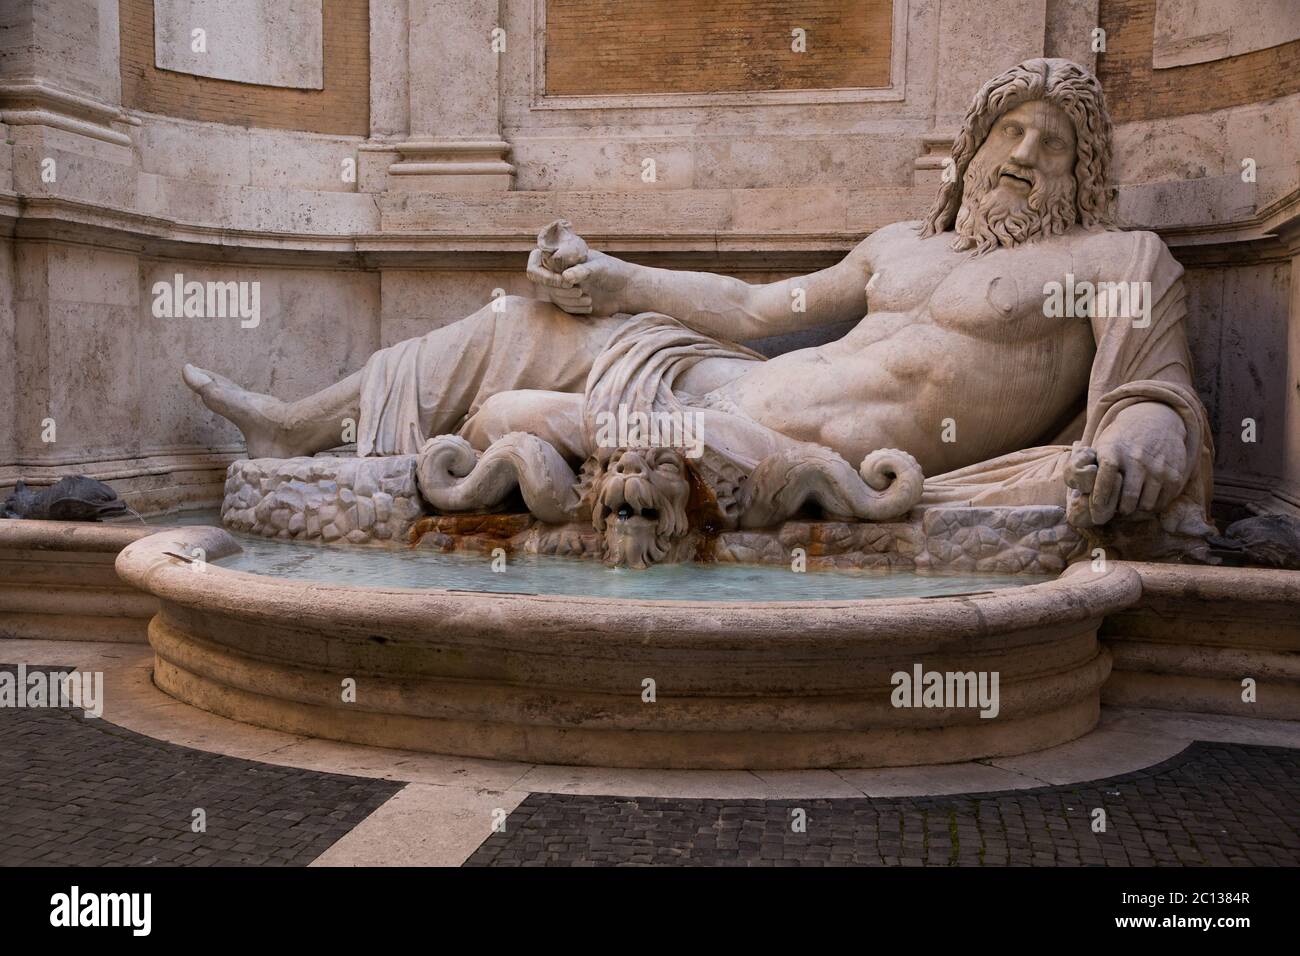 Marforio, grande fontaine de sculpture en marbre romain à l'intérieur du musée Capitoline, Rome, Italie Banque D'Images